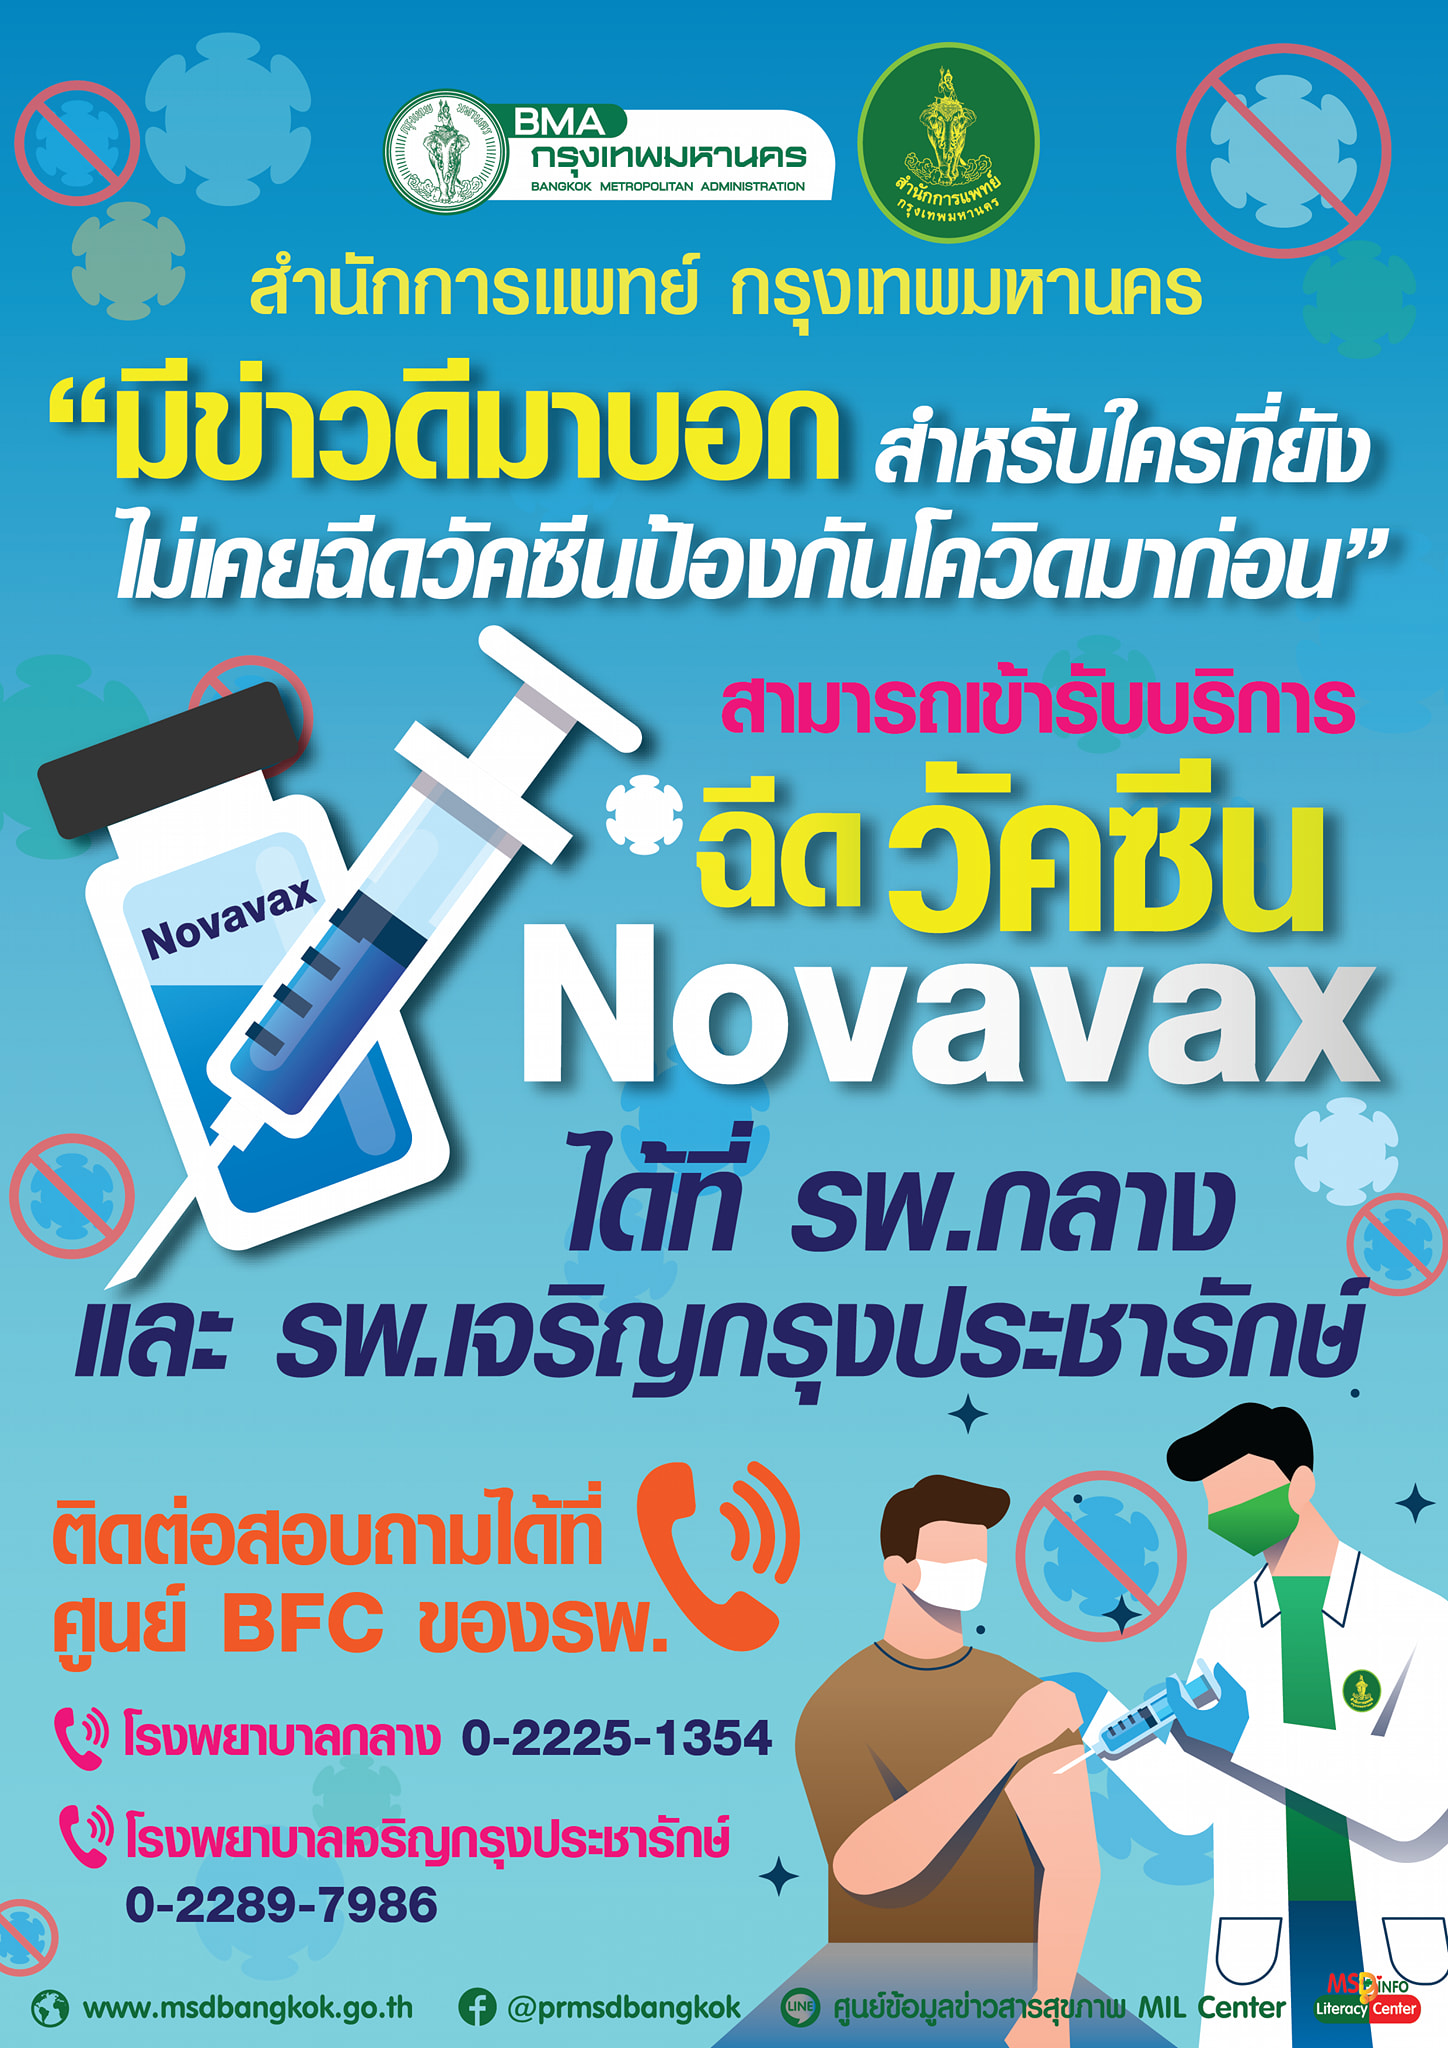 ประกาศวัคซีน Novavax